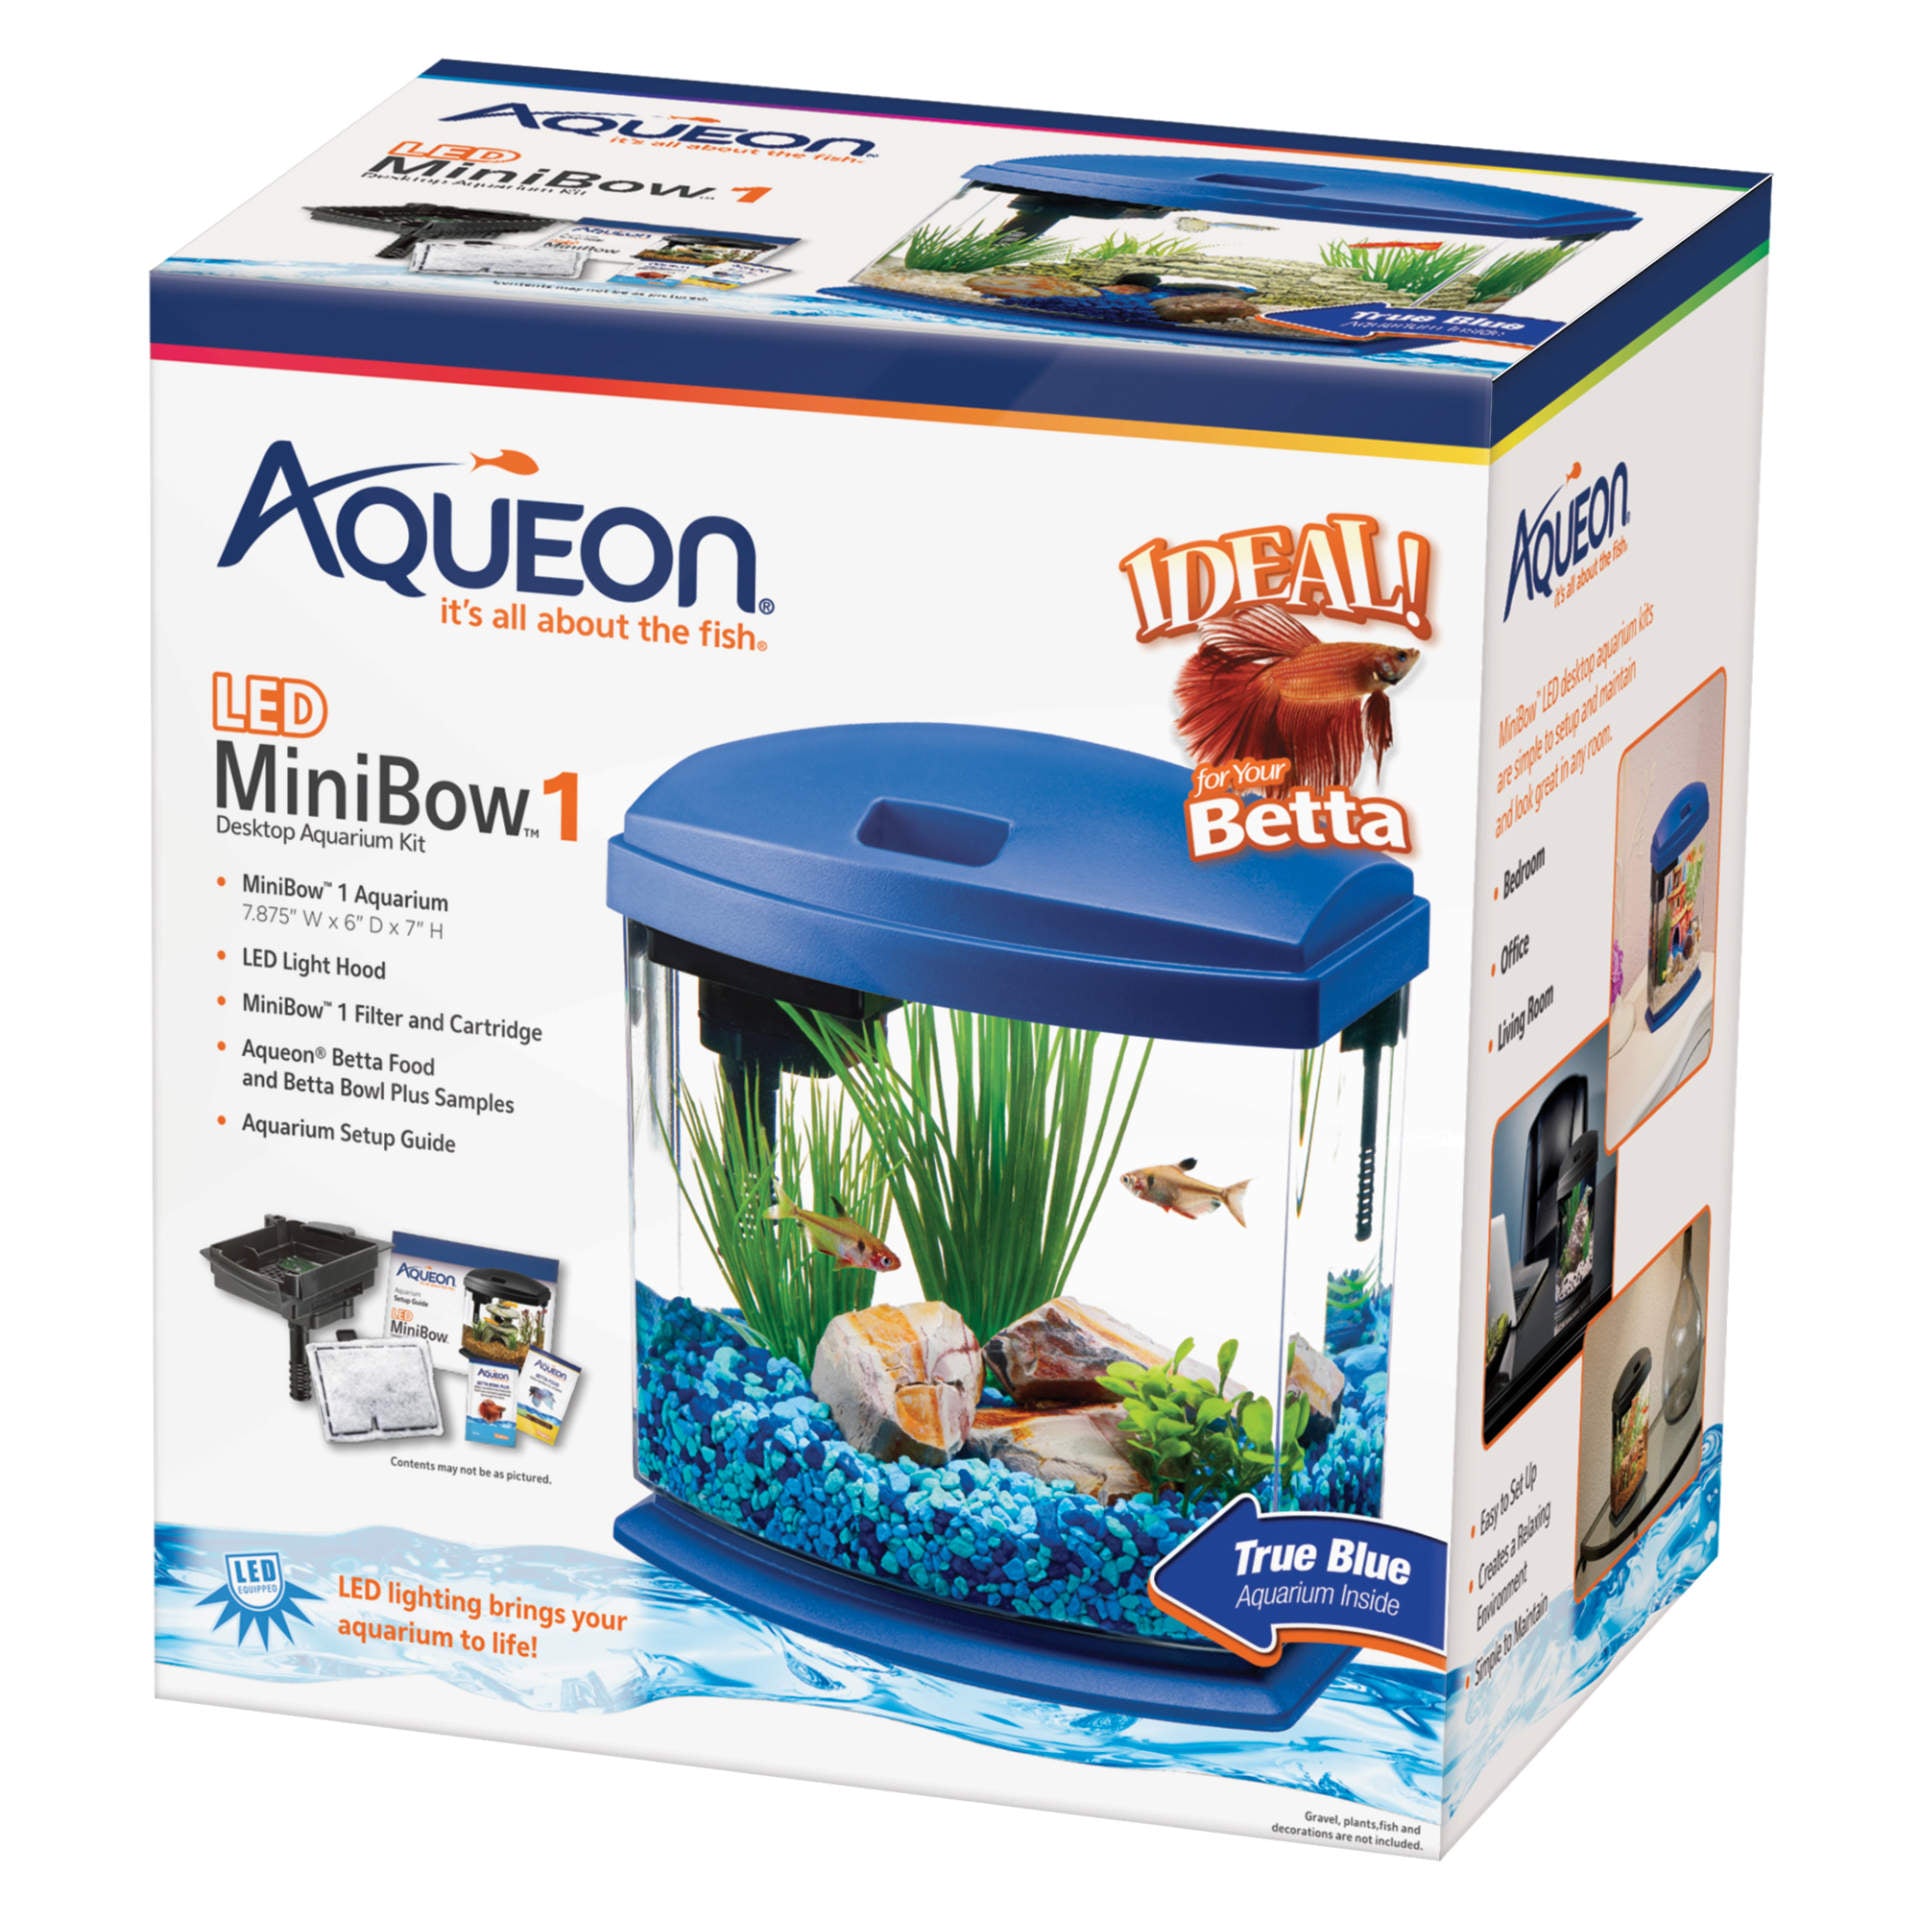 MiniBow LED Aquarium Kit 1 Gallon